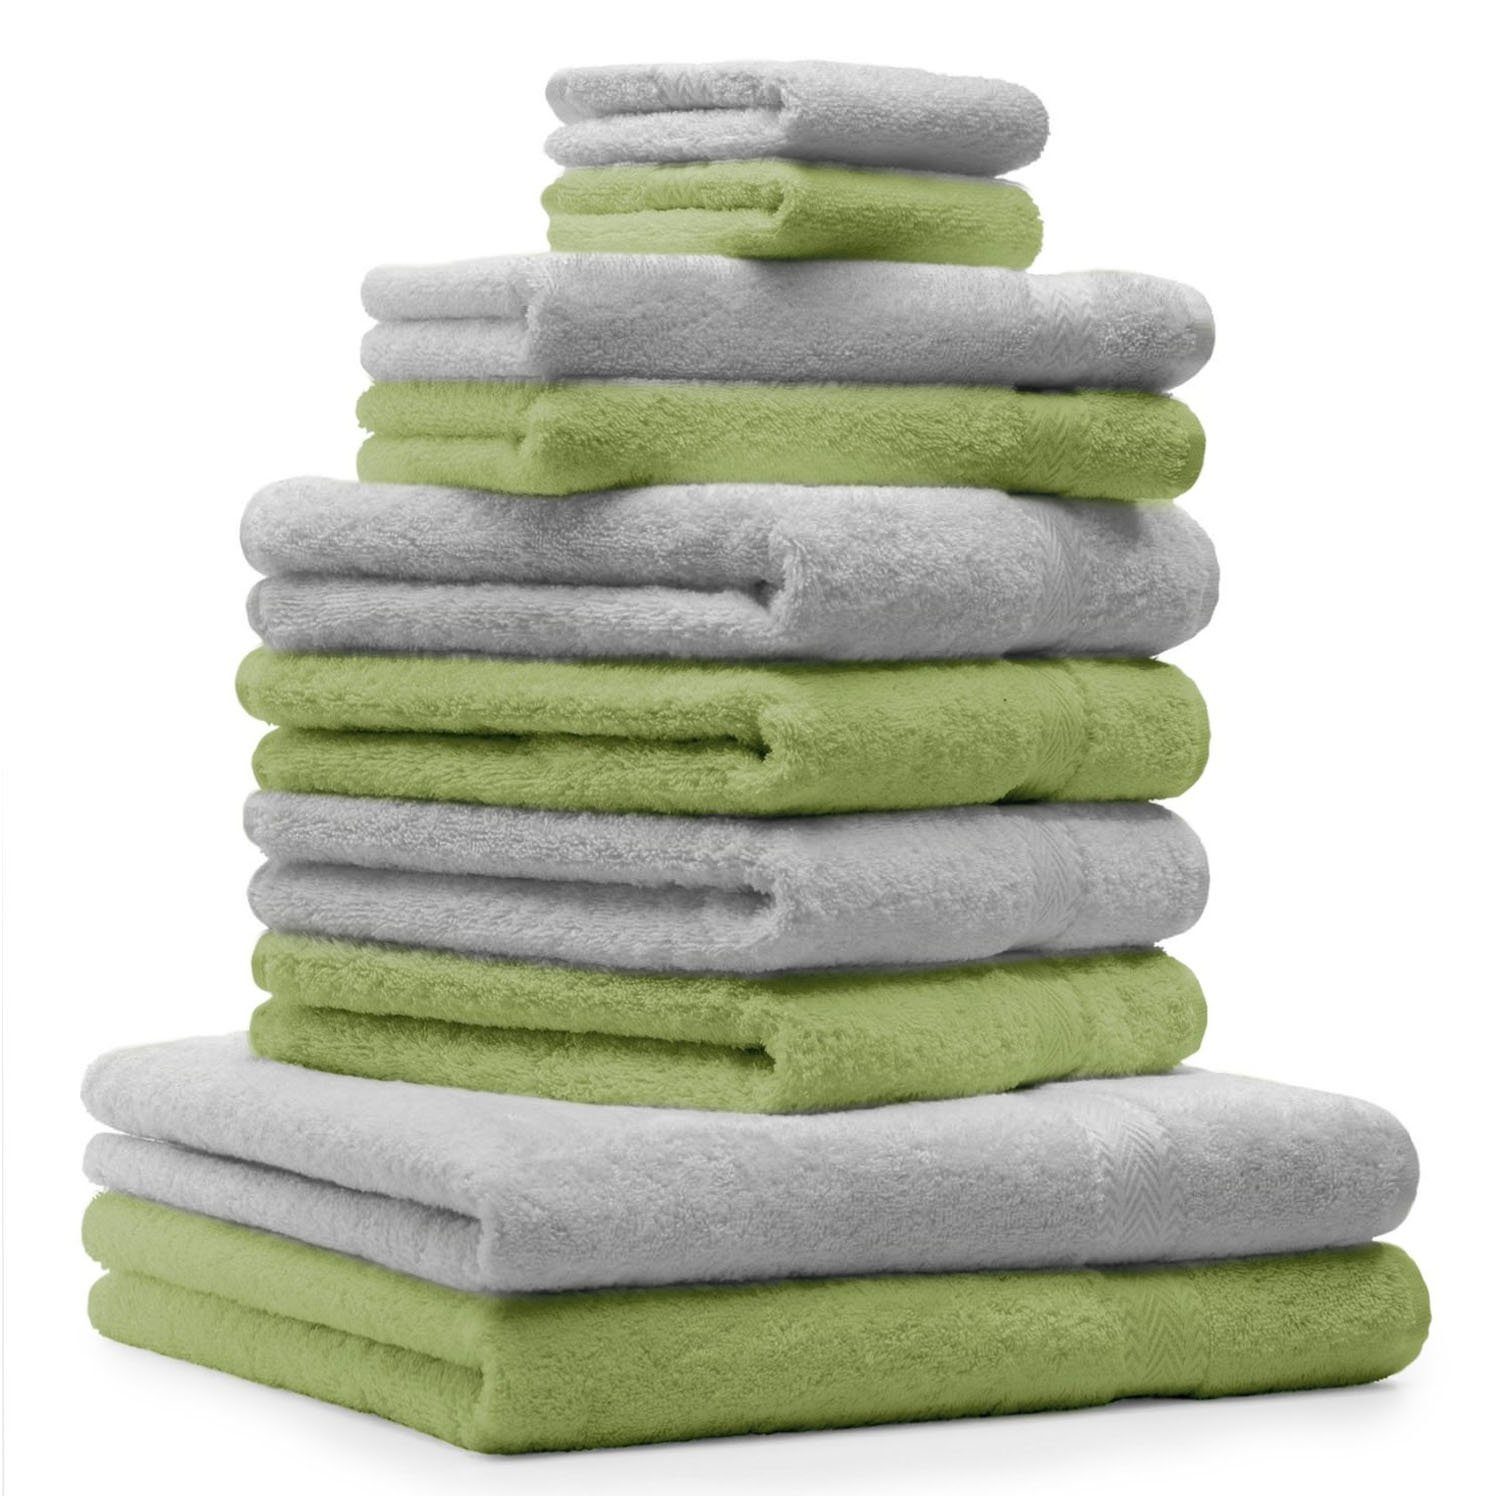 Betz Handtuch Set 10-TLG. Handtuch-Set Classic Farbe apfelgrün und silbergrau, 100% Baumwolle